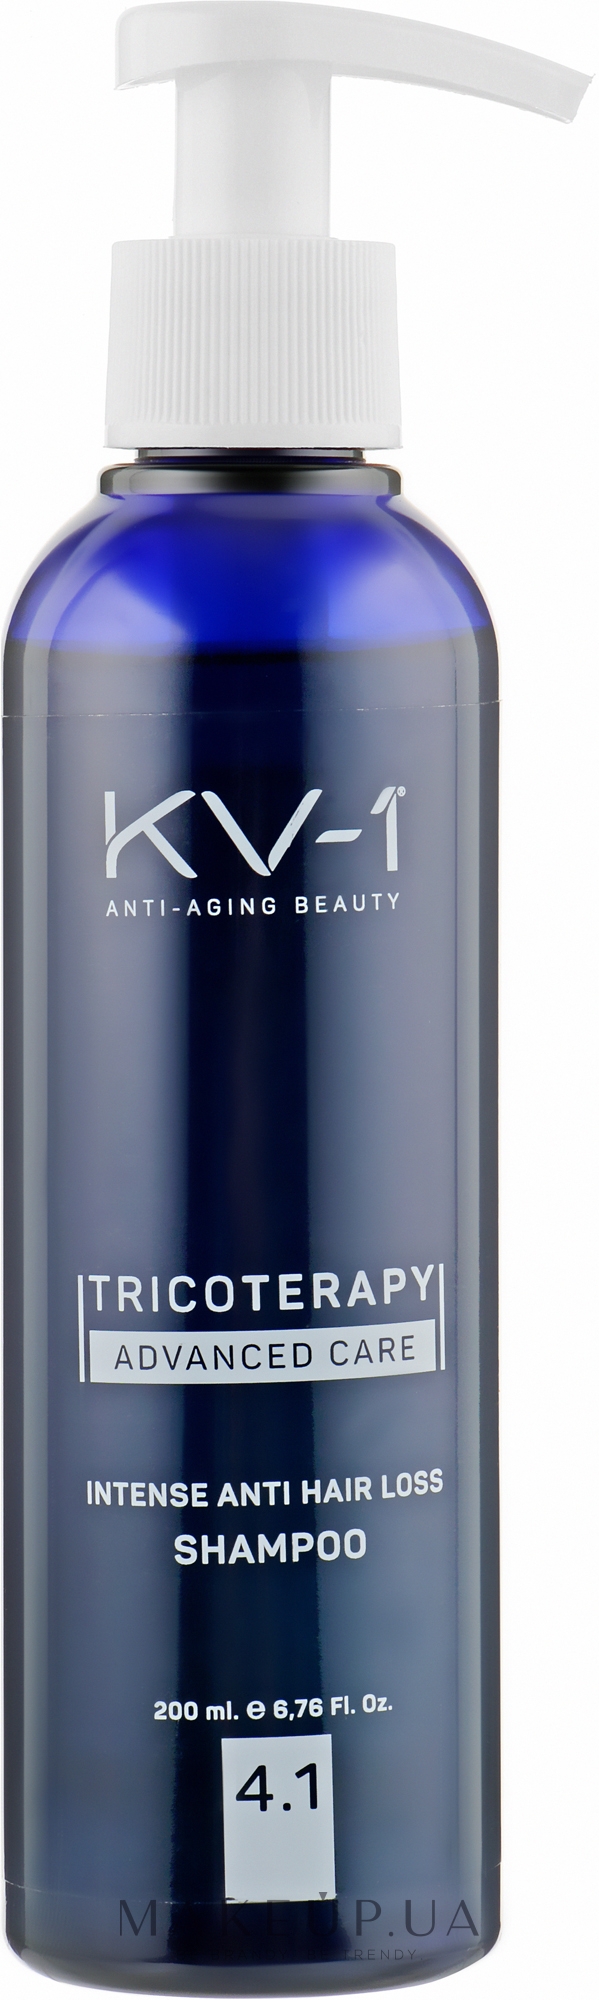 Інтенсивний шампунь проти випадання волосся 4.1 - KV-1 Tricoterapy Intense Anti Hair Loss Shampoo — фото 200ml